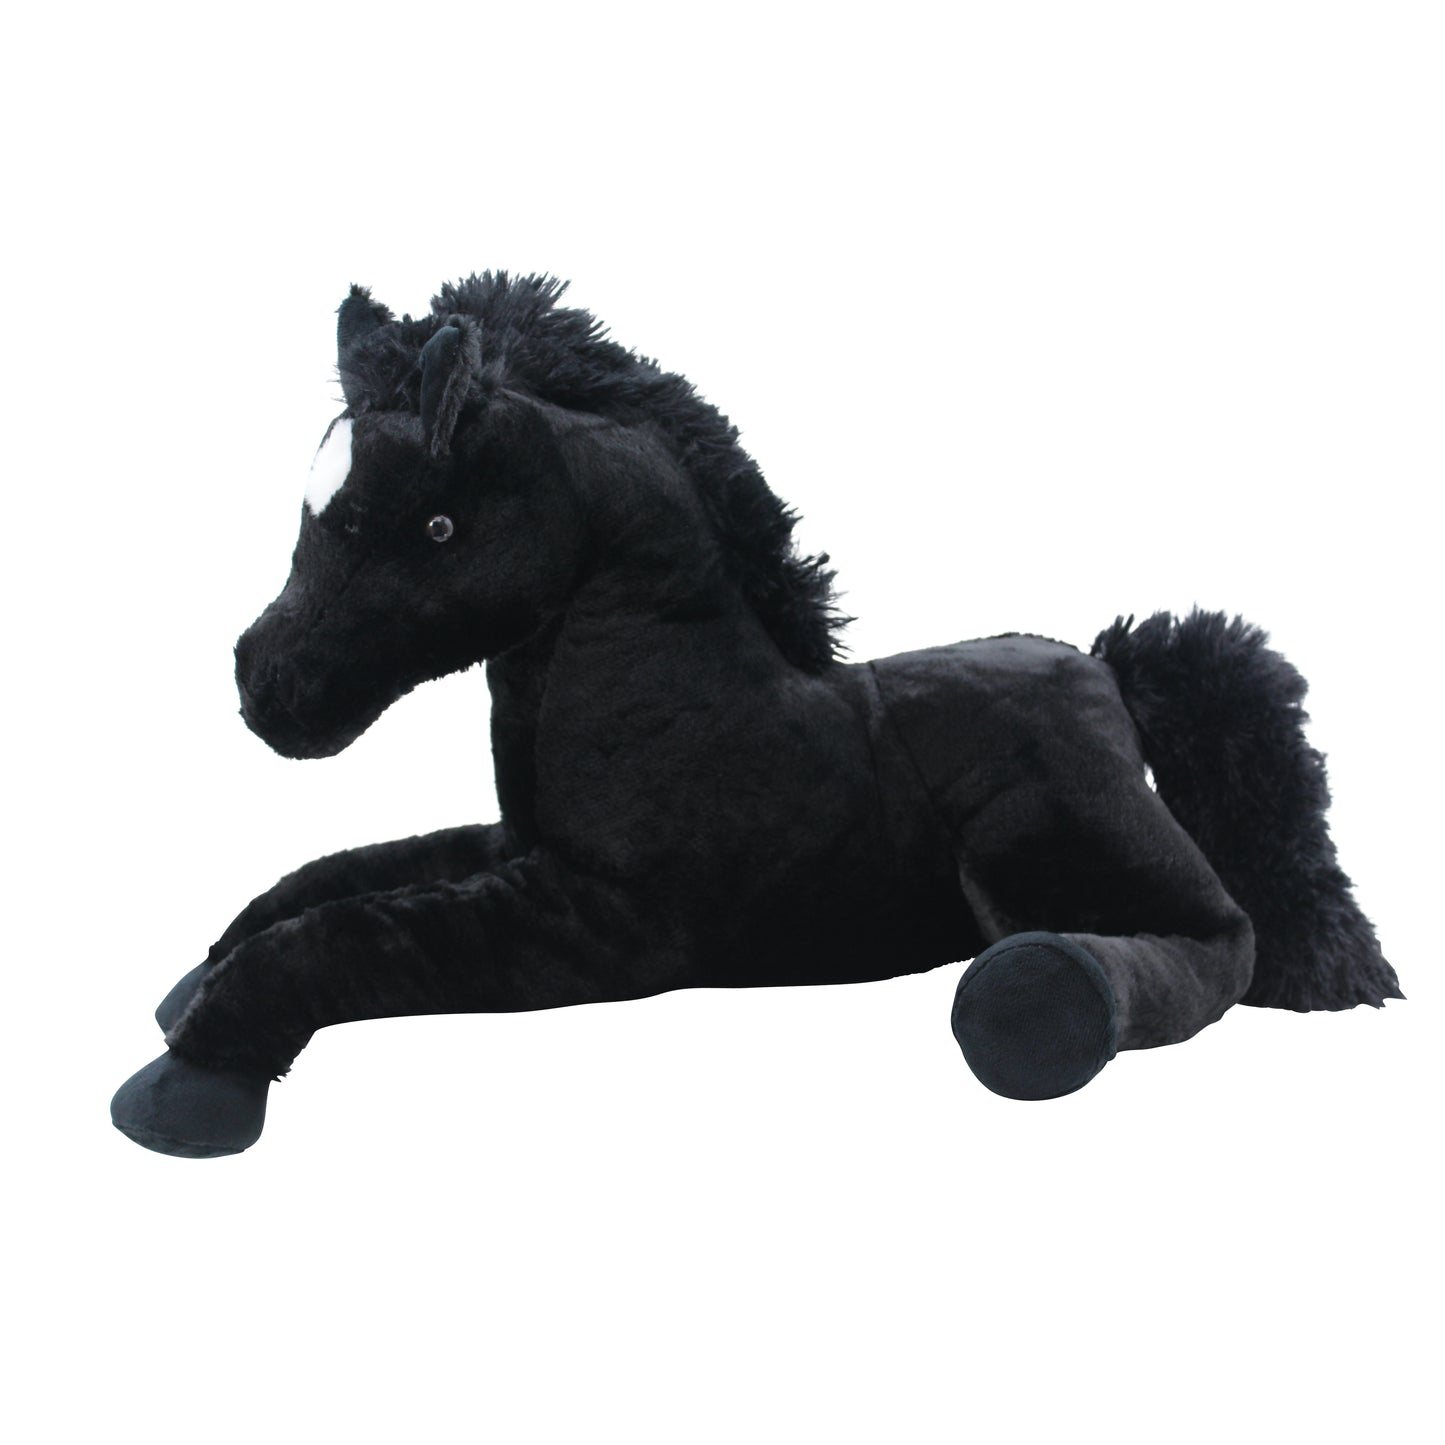 Sweety Toys 5185 knuffel paard veulen zwart knuffel zacht pluche paard liggend